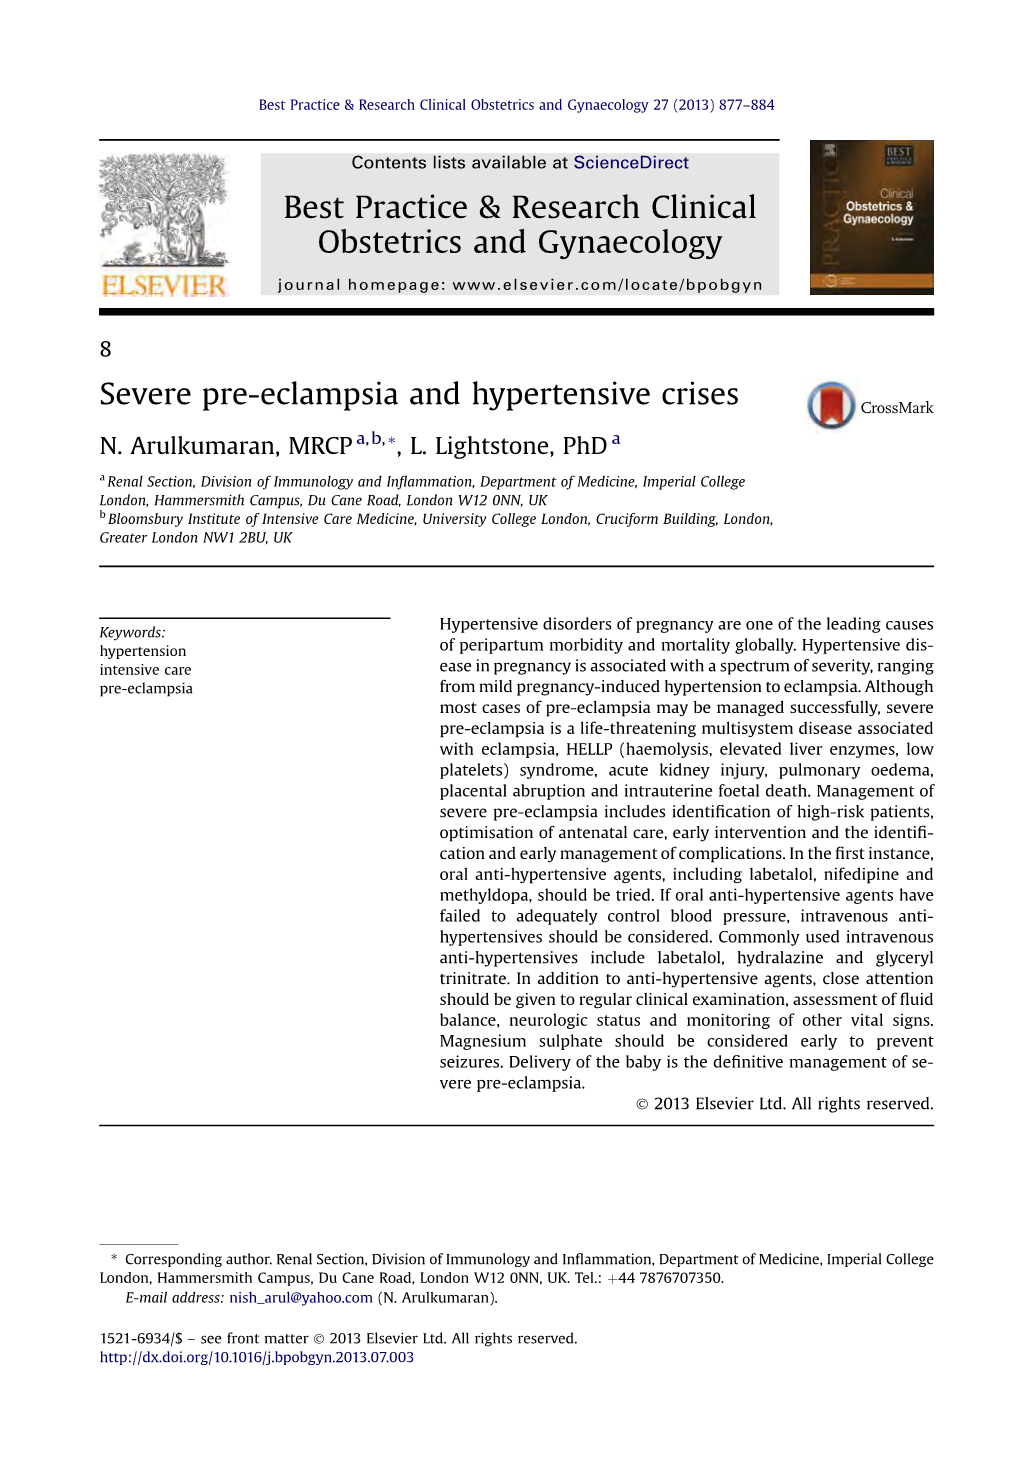 Severe Pre-Eclampsia and Hypertensive Crises